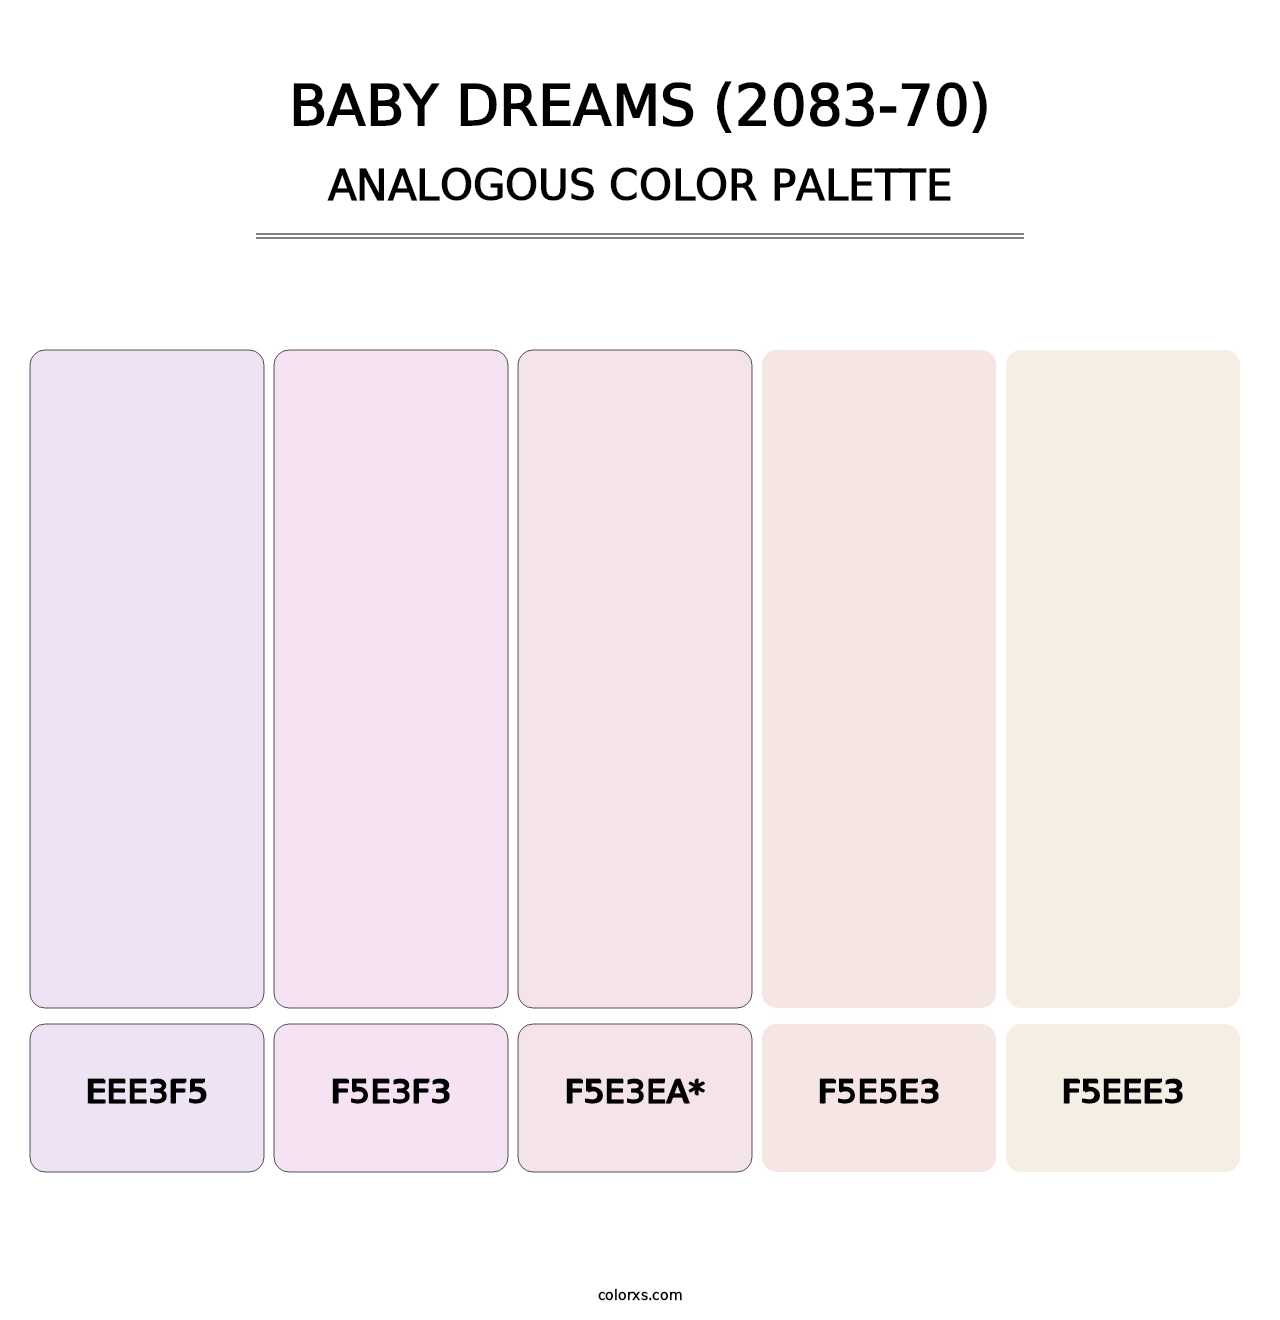 Baby Dreams (2083-70) - Analogous Color Palette